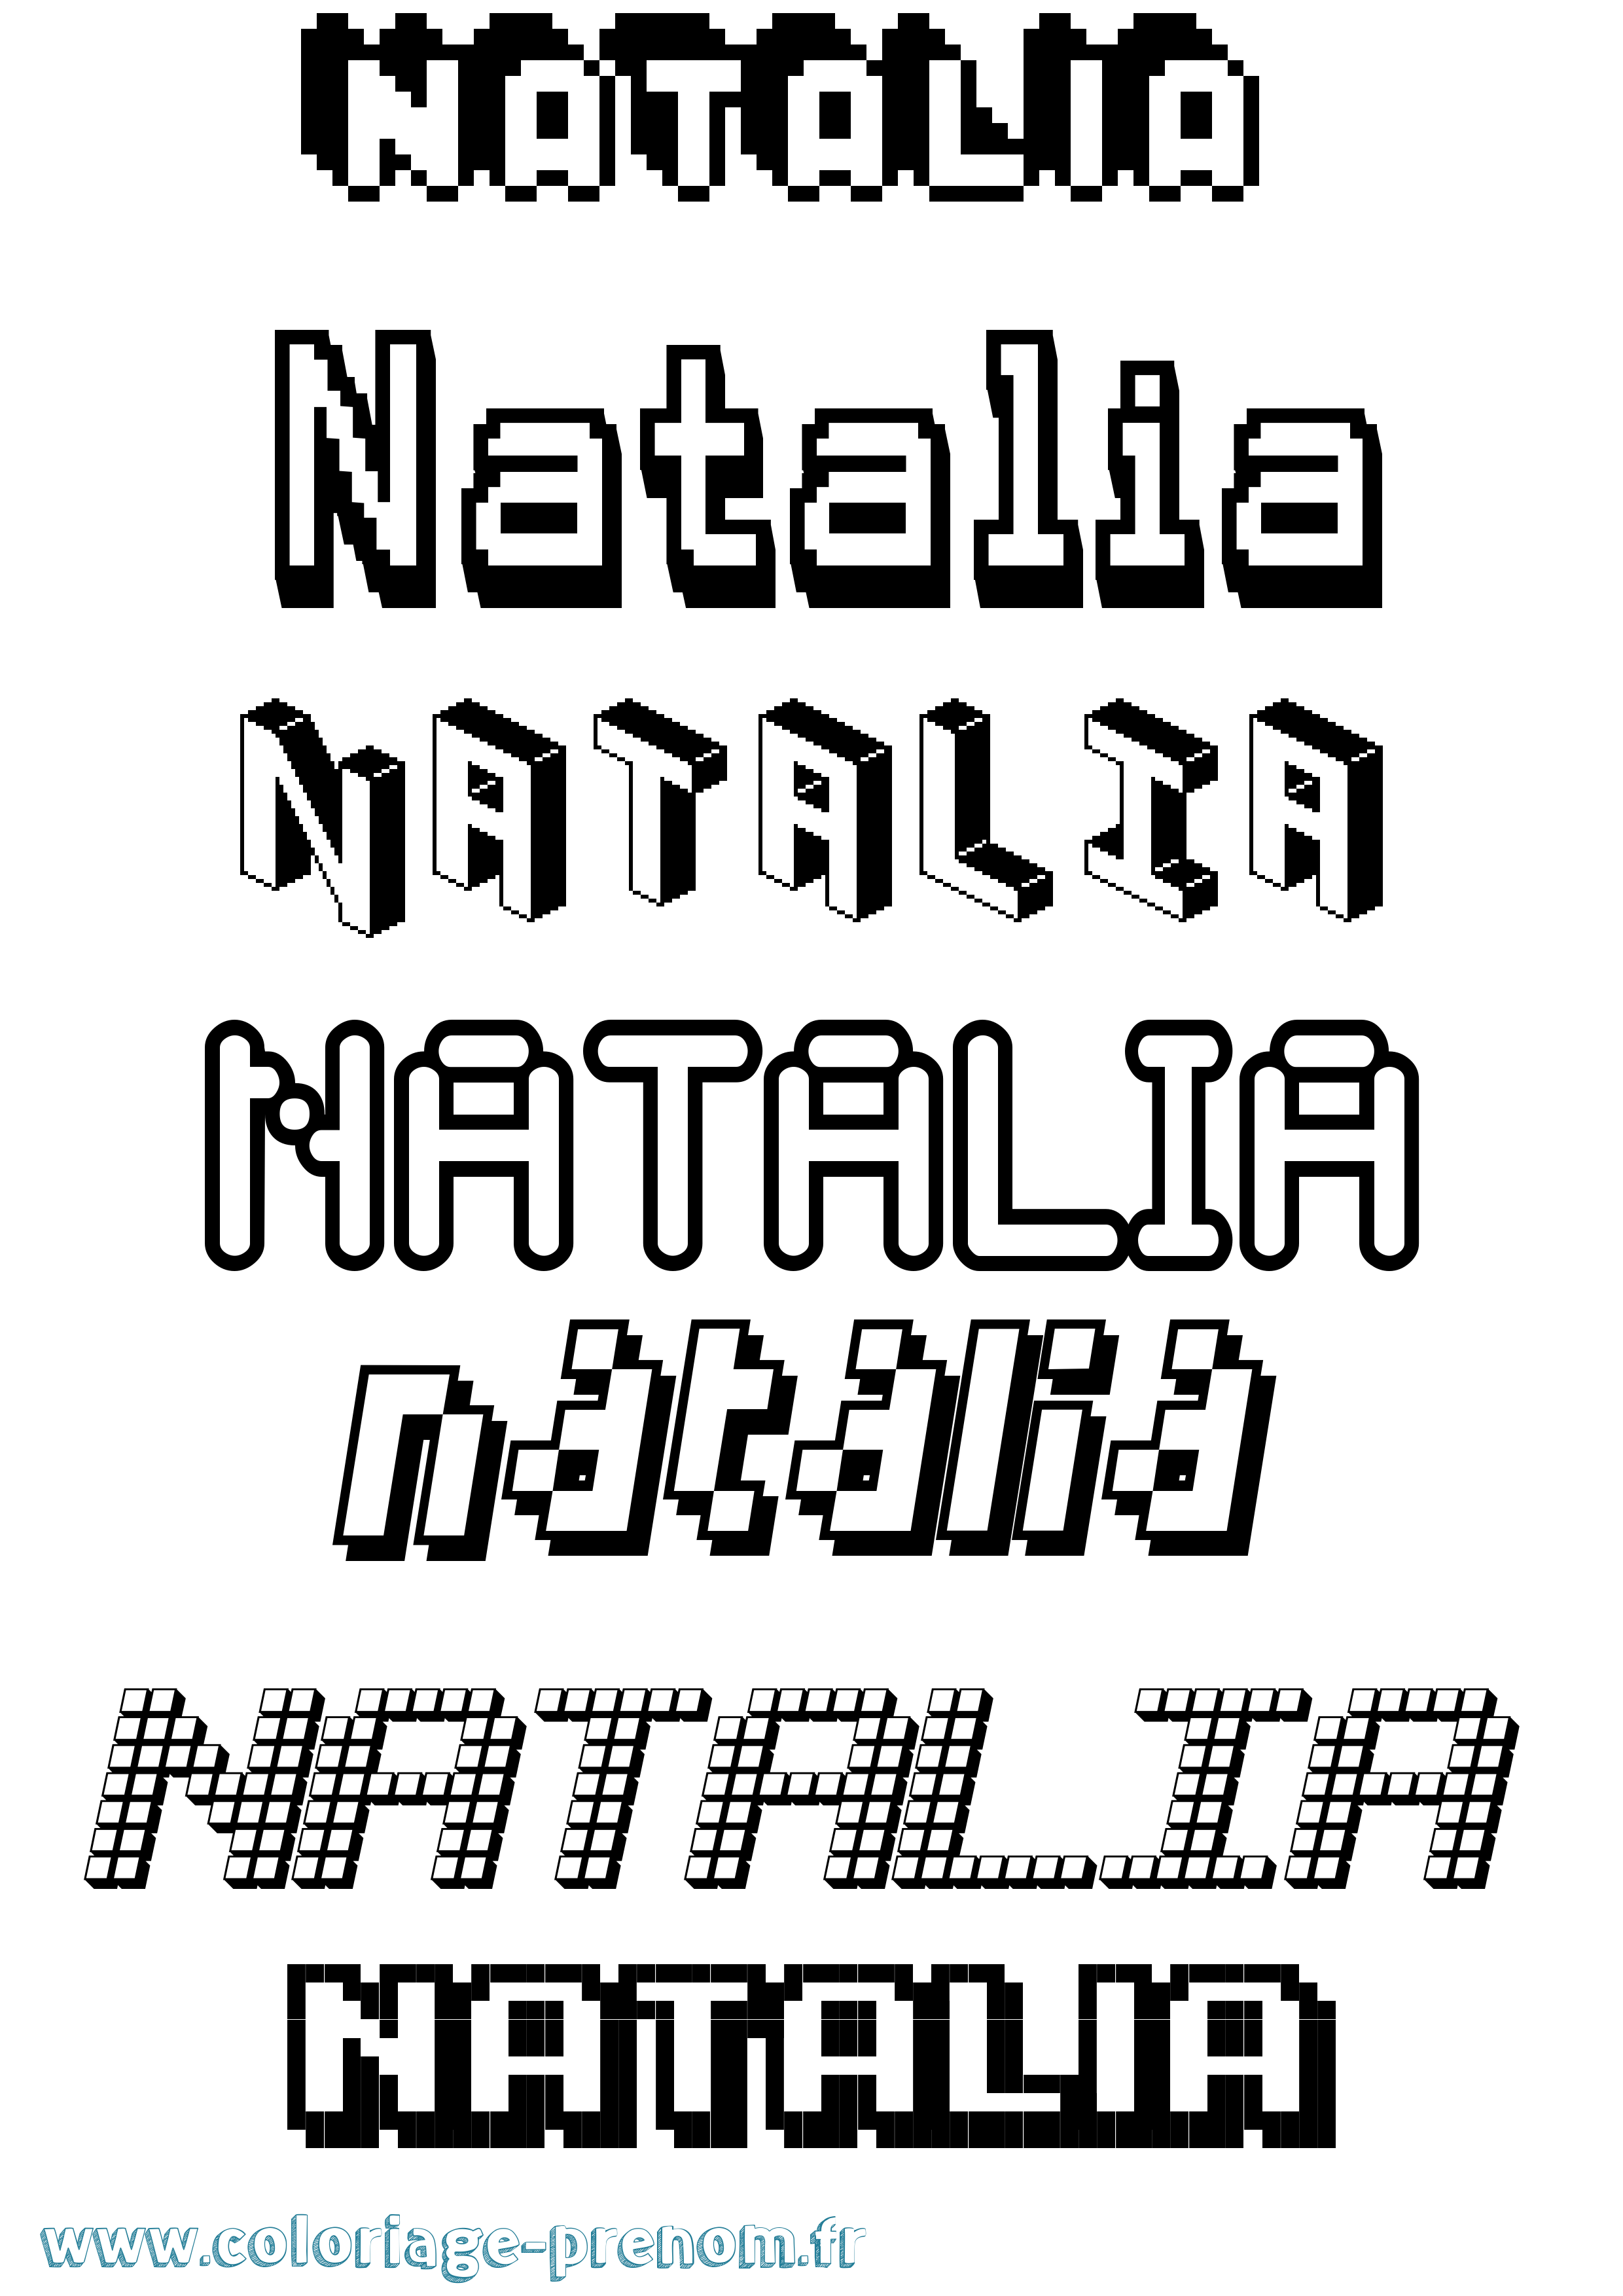 Coloriage prénom Natalia